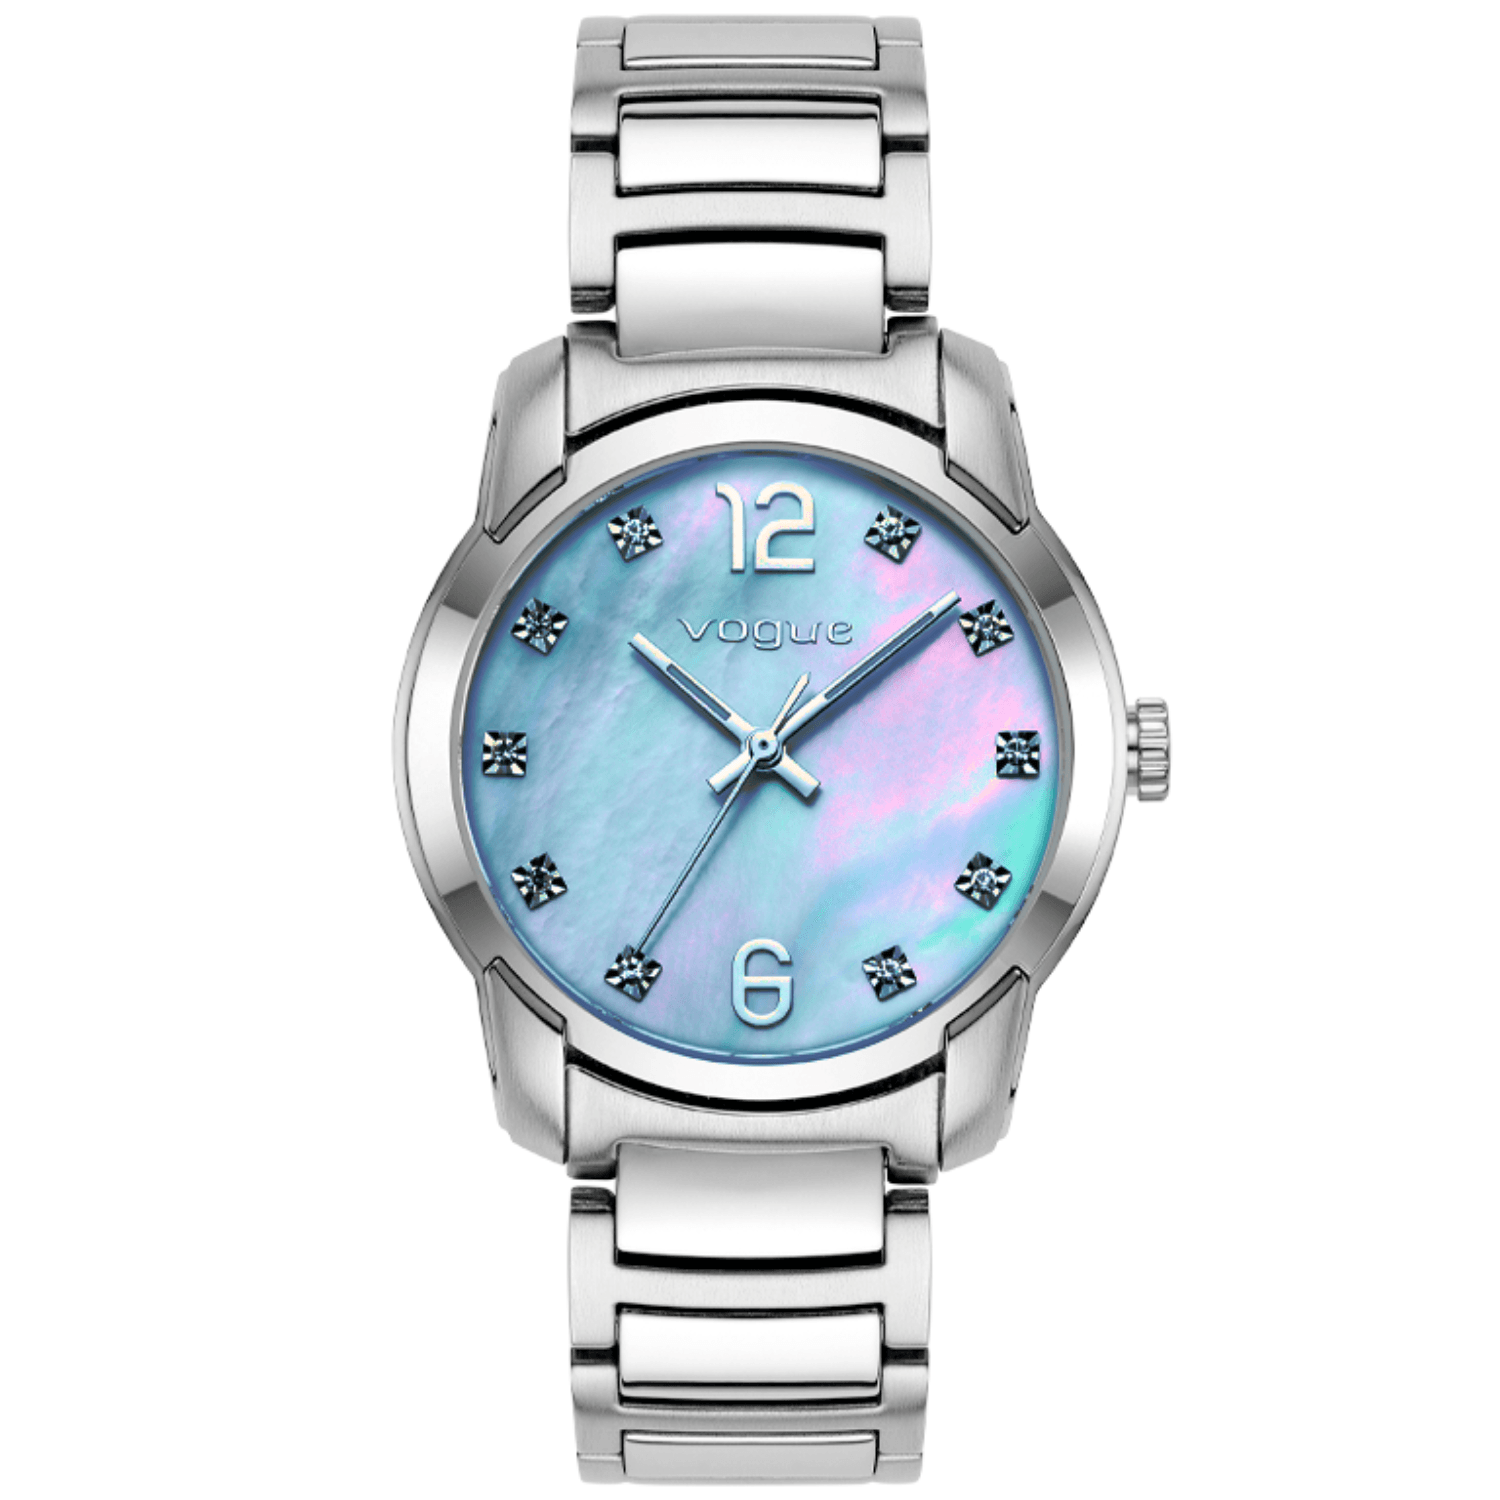 Ρολόι Vogue Sorento 2020611282 με ασημί μπρασελέ, θαλασσί καντράν με ασημί δείκτες και διάμετρο στεφανιού 35mm διακοσμημένο με ζιργκόν.